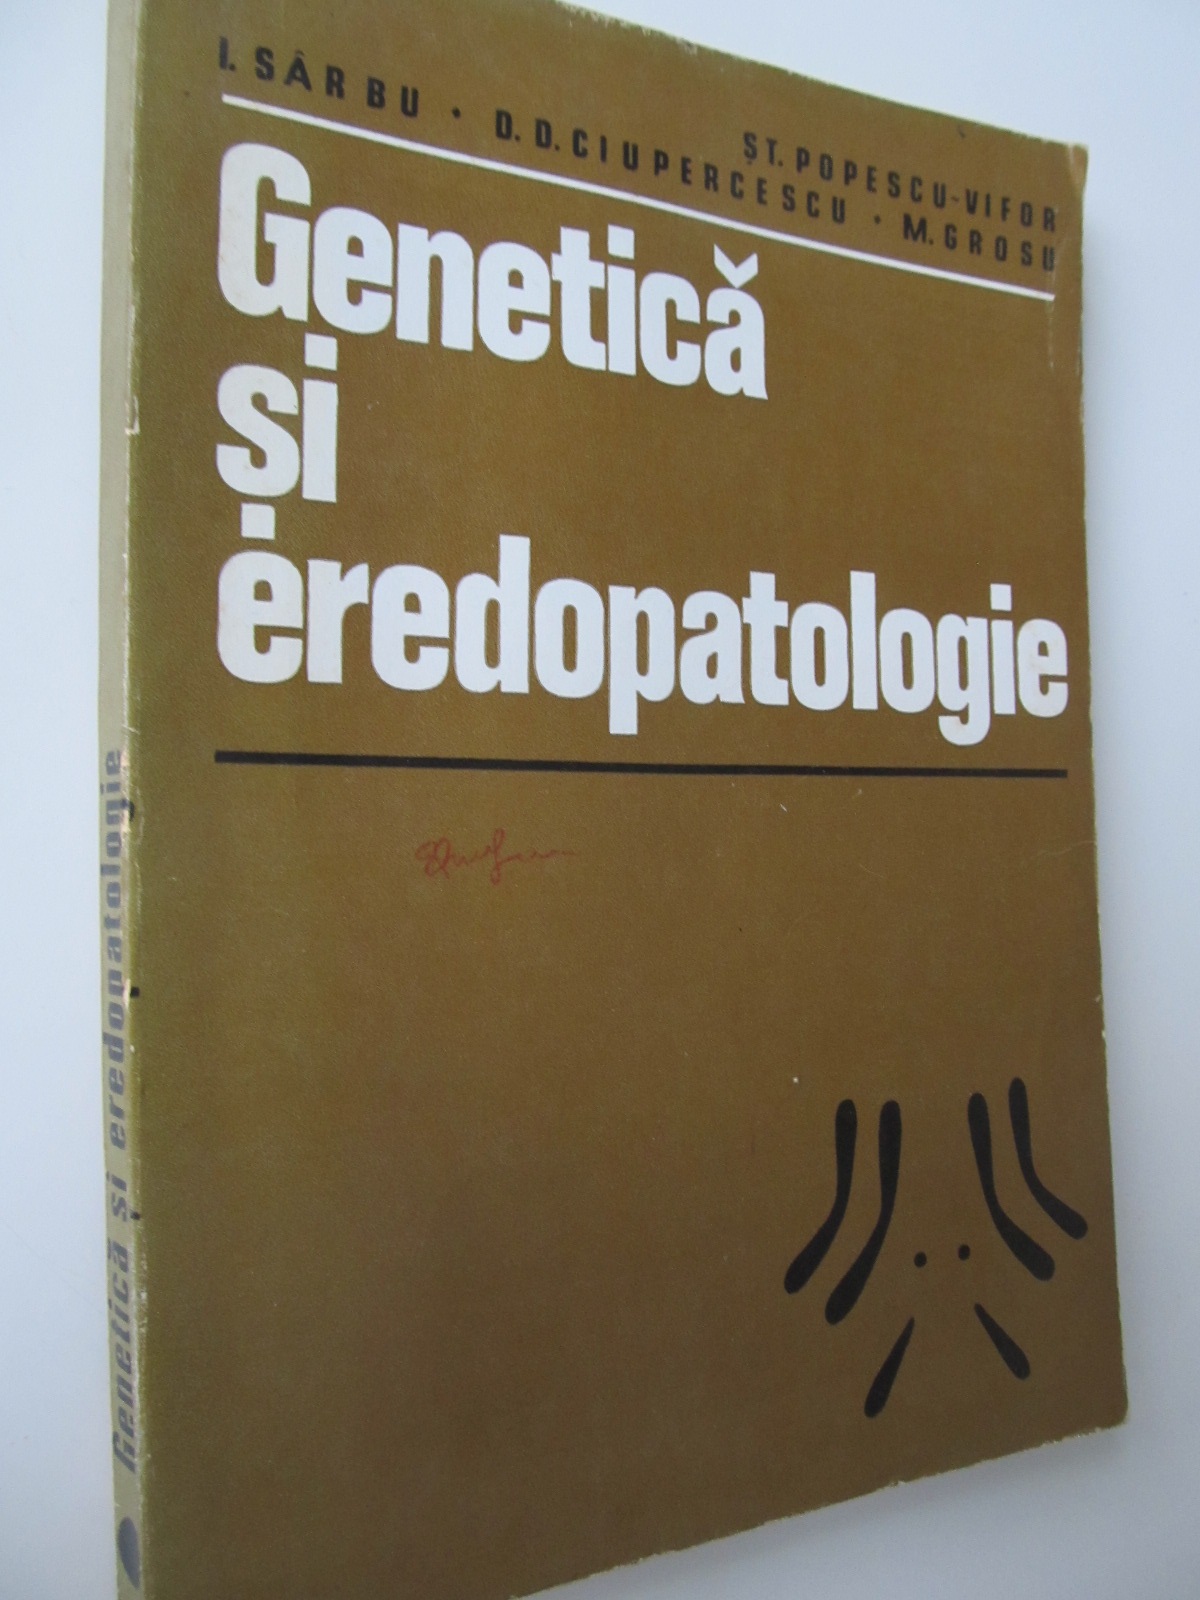 Genetica si eredopatologie - St. Popescu Vifor , I. Sarbu , D.D. Ciupercescu , M. Grosu | Detalii carte